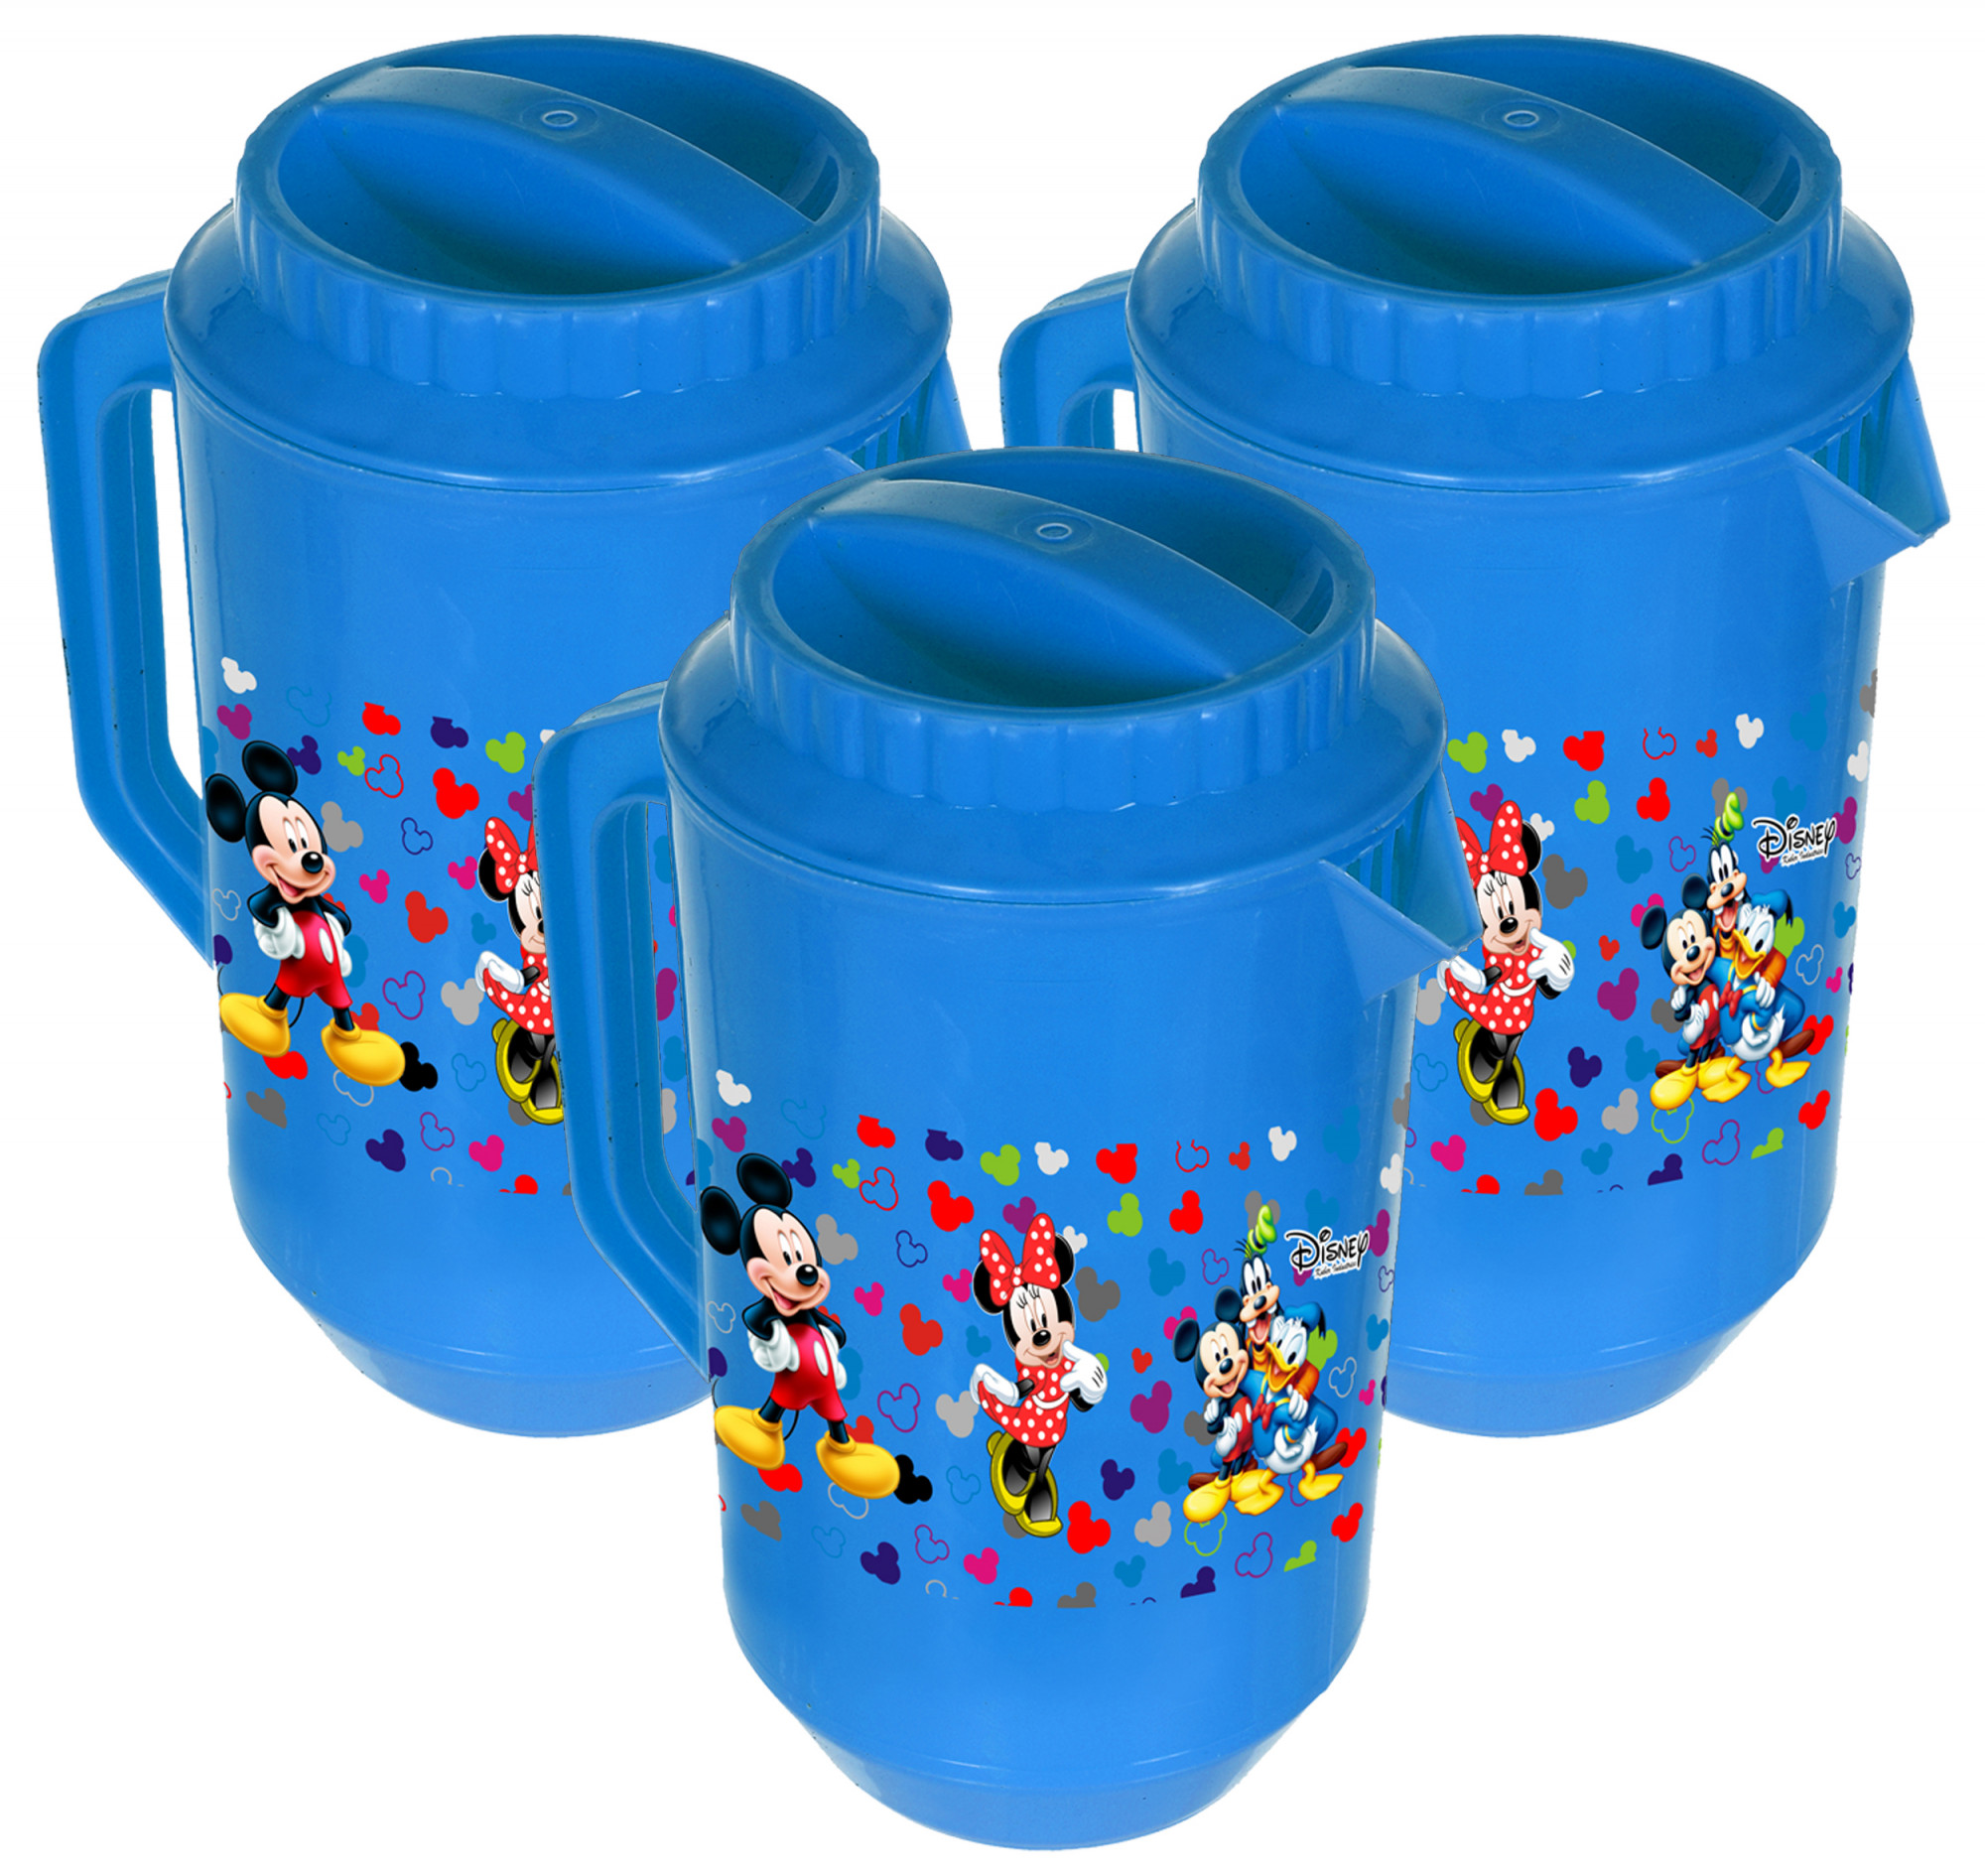 Kuber Industries Disney Team Mickey Print Unbreakable Multipurpose Plastic Water & Juice Jug With Lid,2 Ltr (Blue)